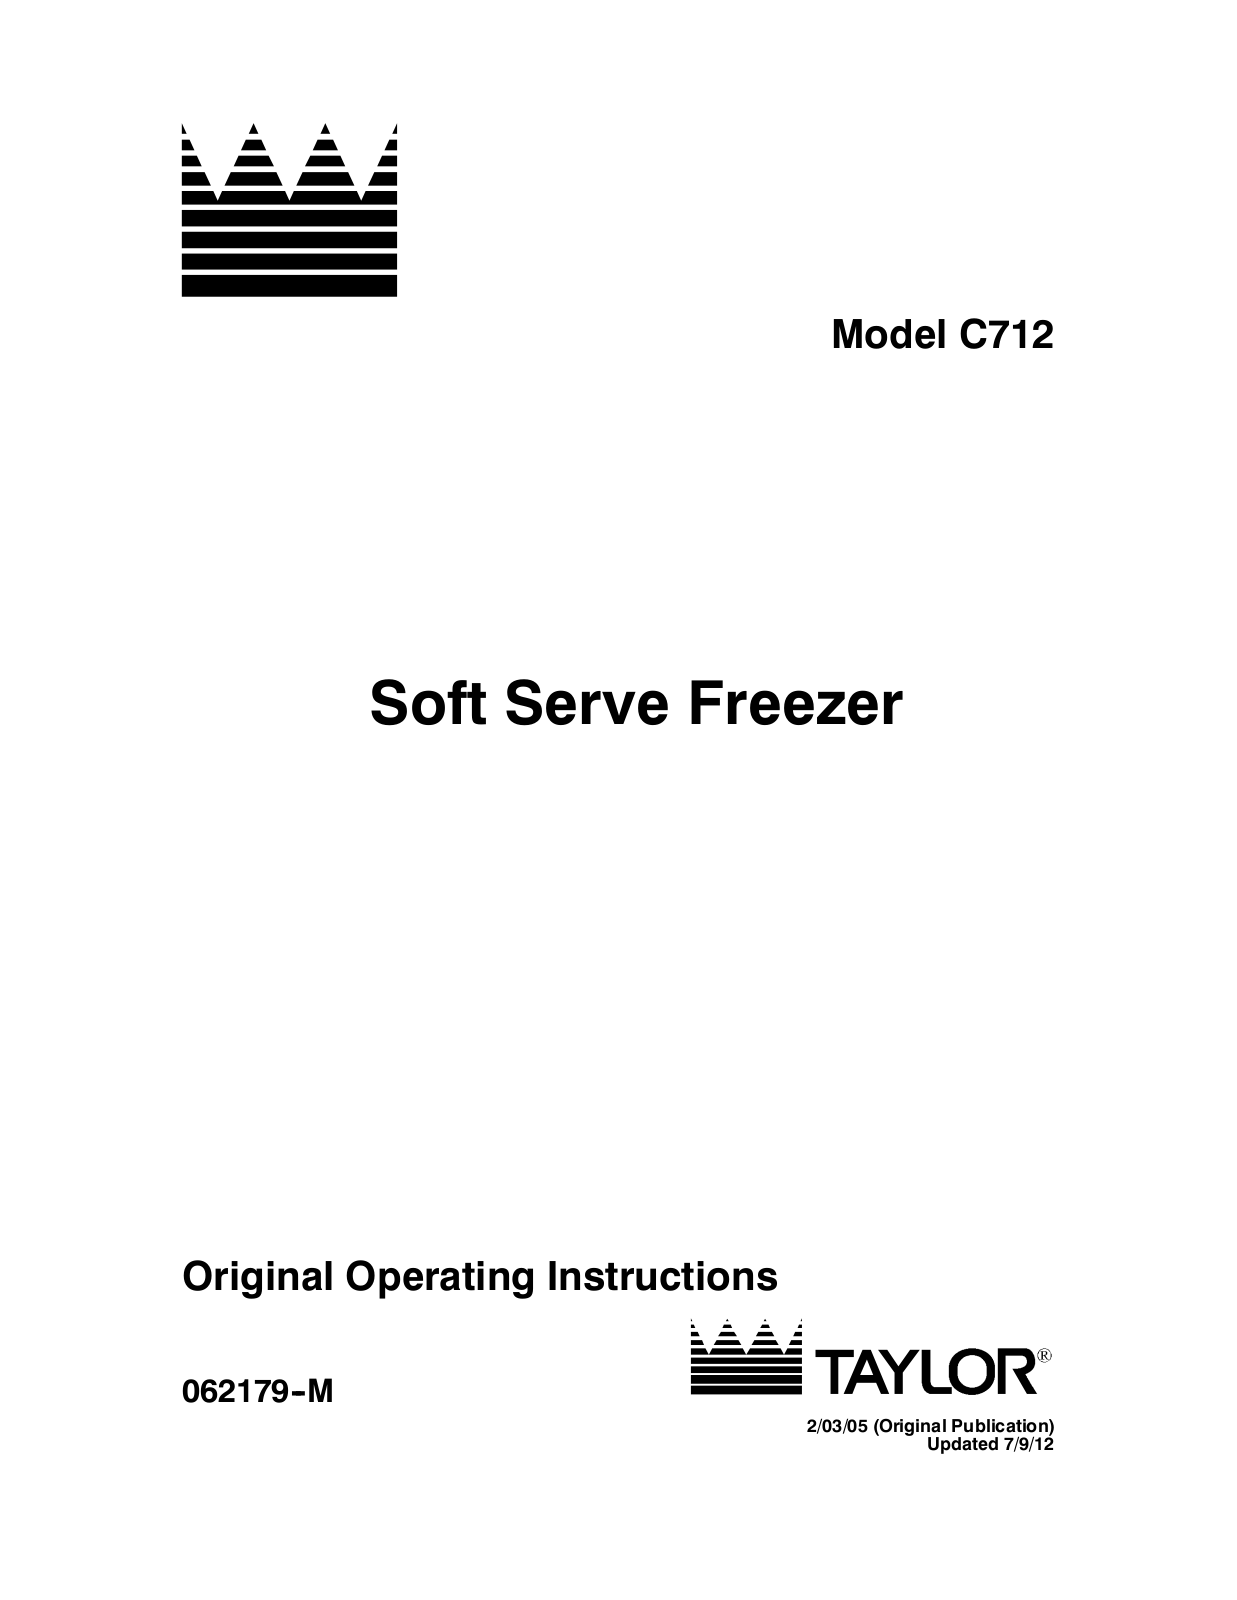 Taylor C712 User Manual